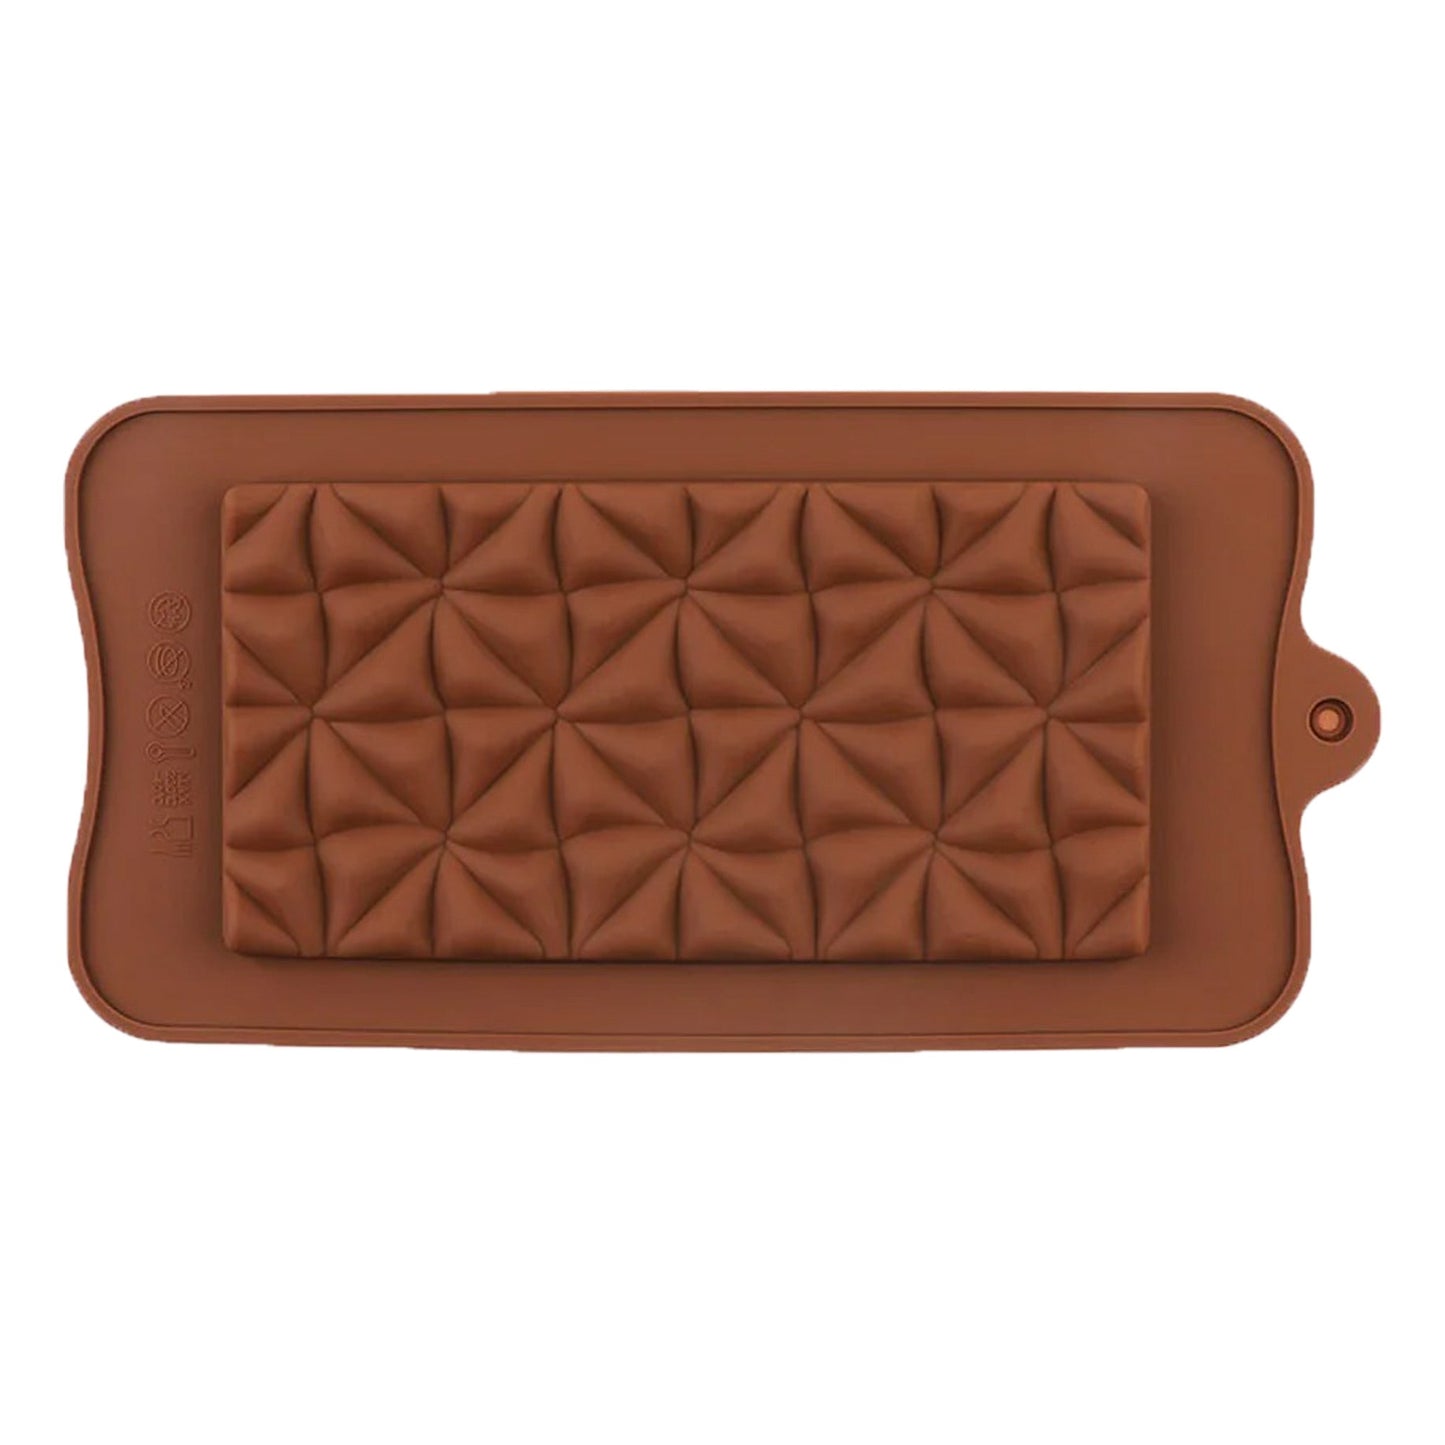 Half Square Triangles Design Chocolate Bar Silicone Mold